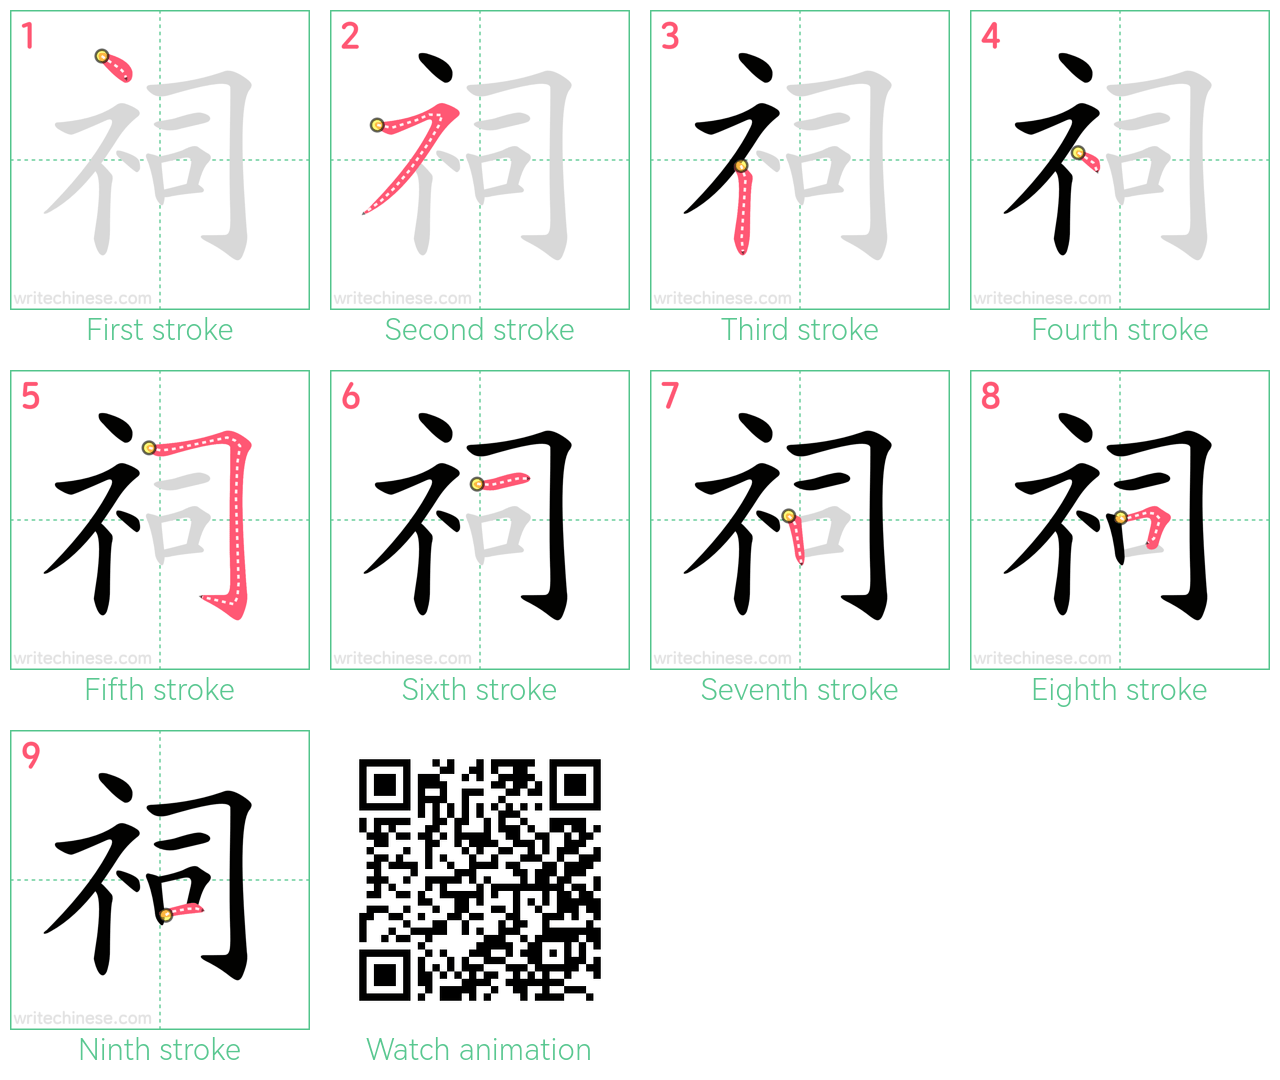 祠 step-by-step stroke order diagrams